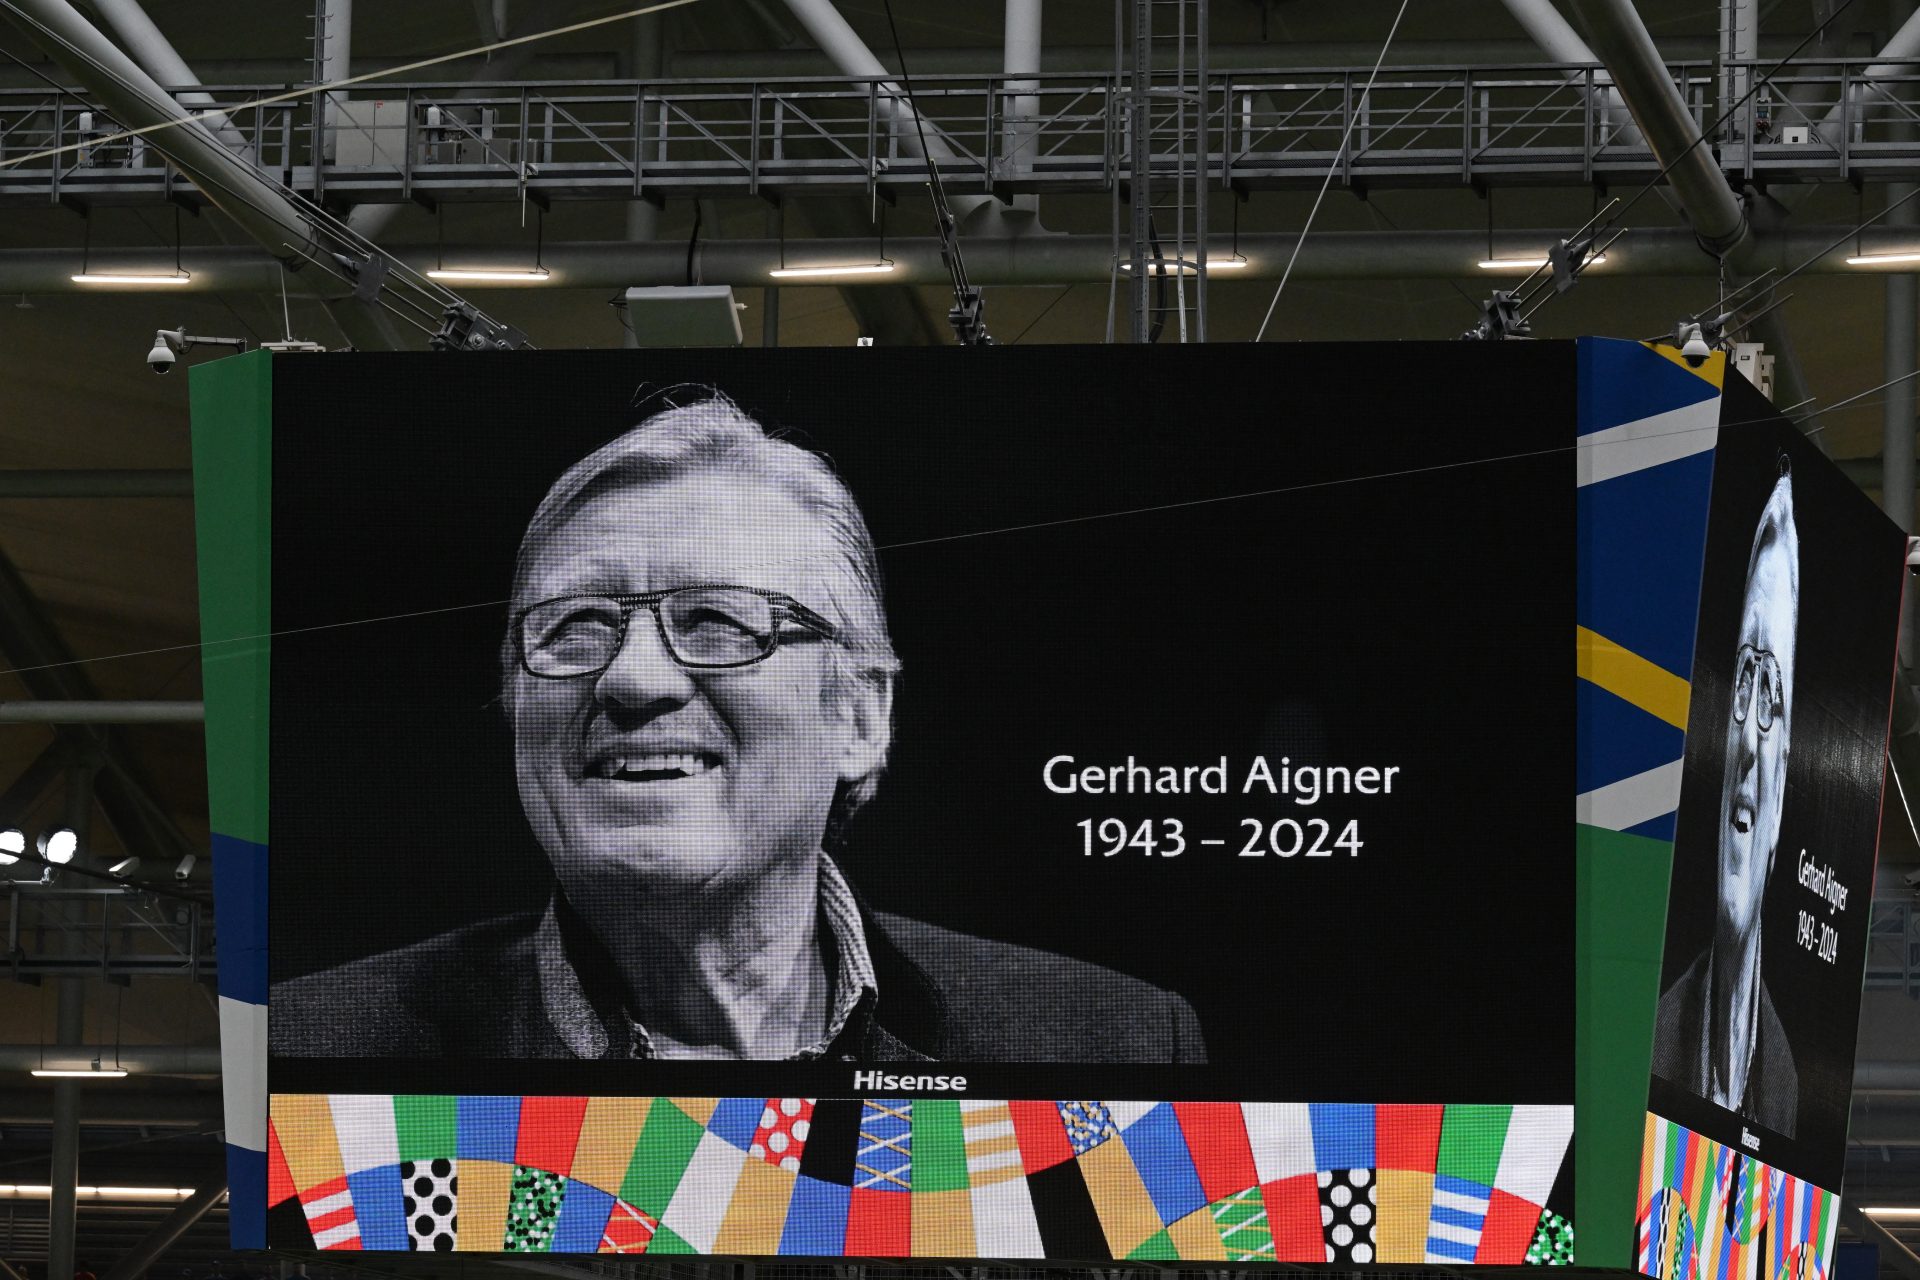 In memory of Gerhard Aigner